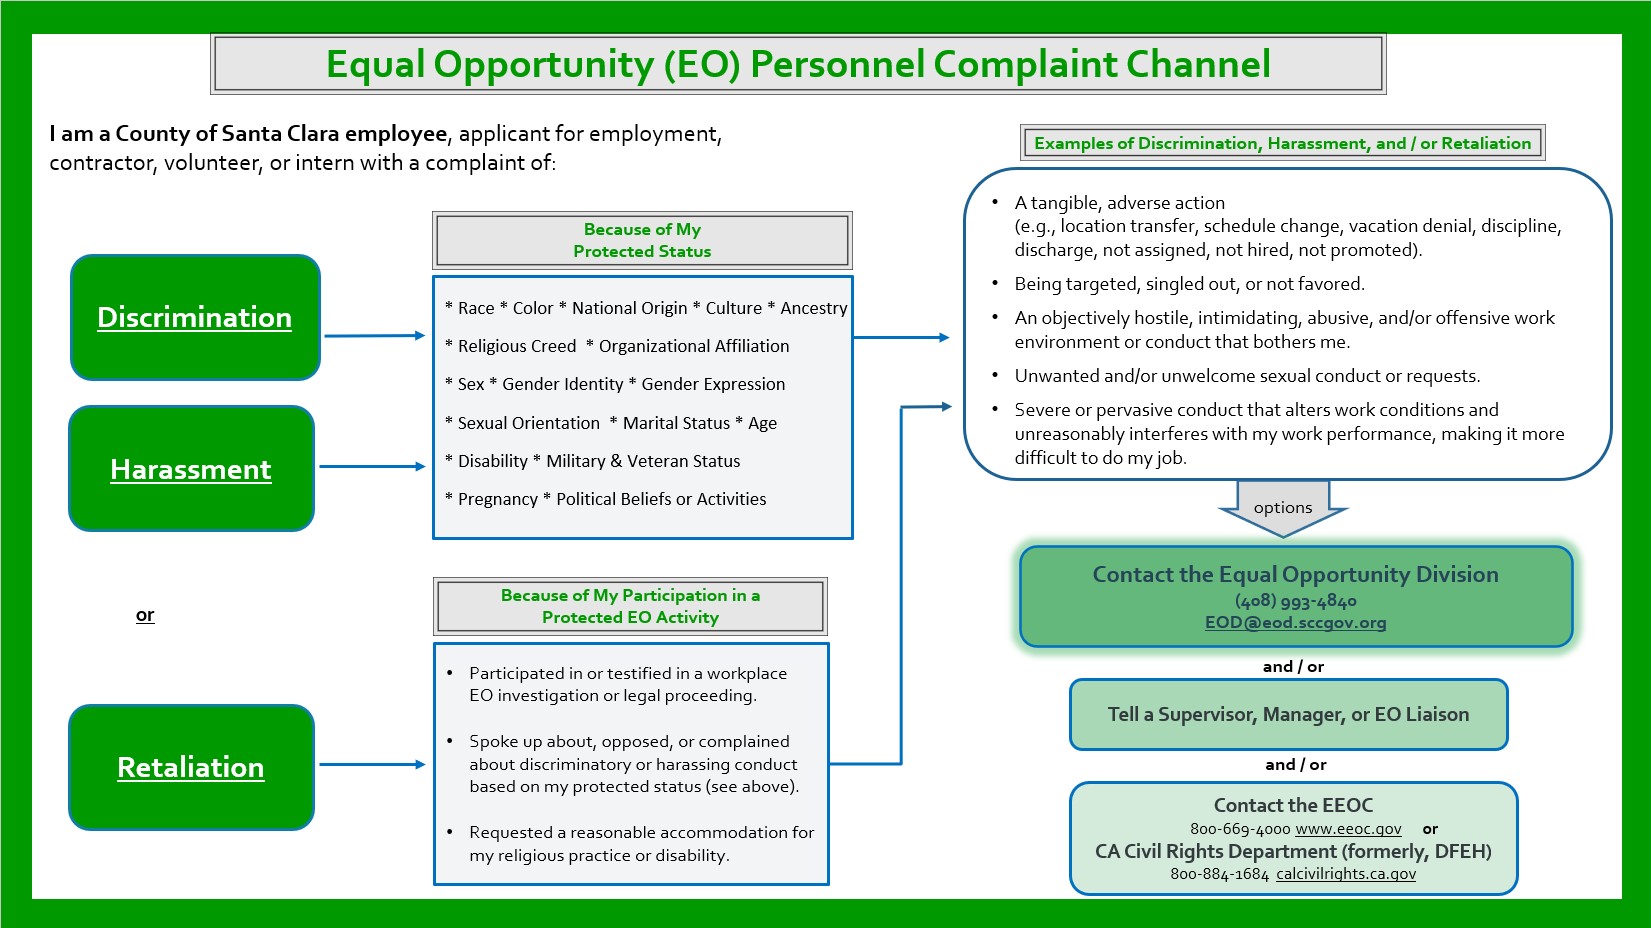 Non-EOD Complaint Channel